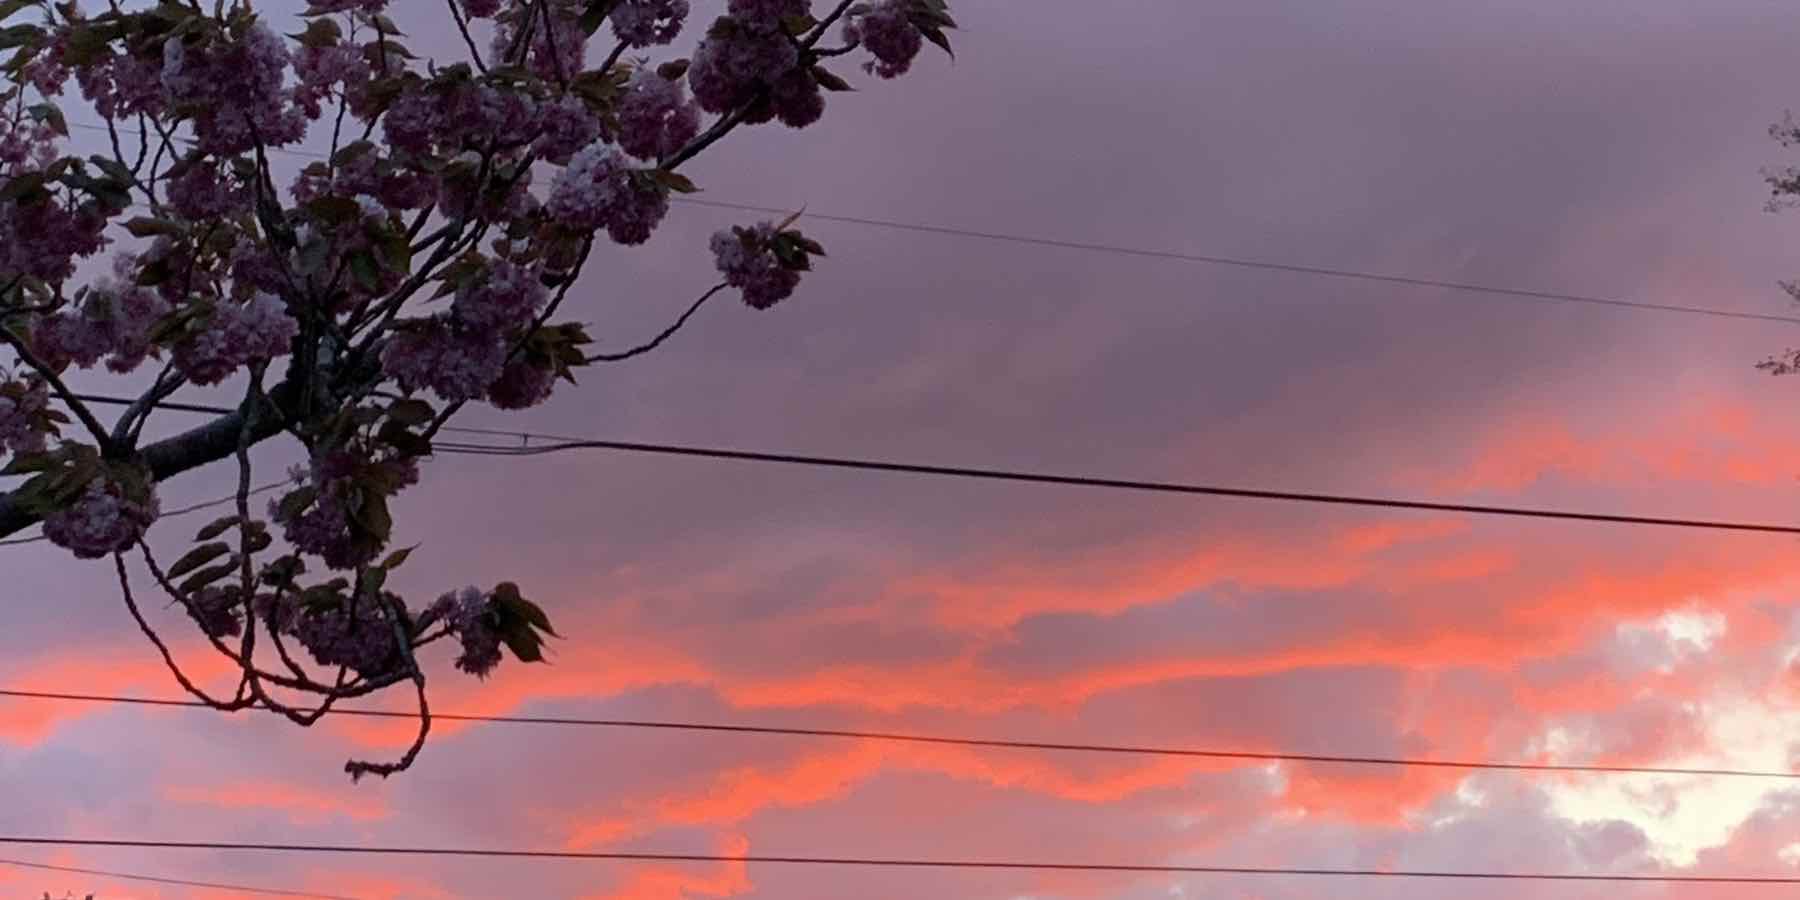 Astoria sunset